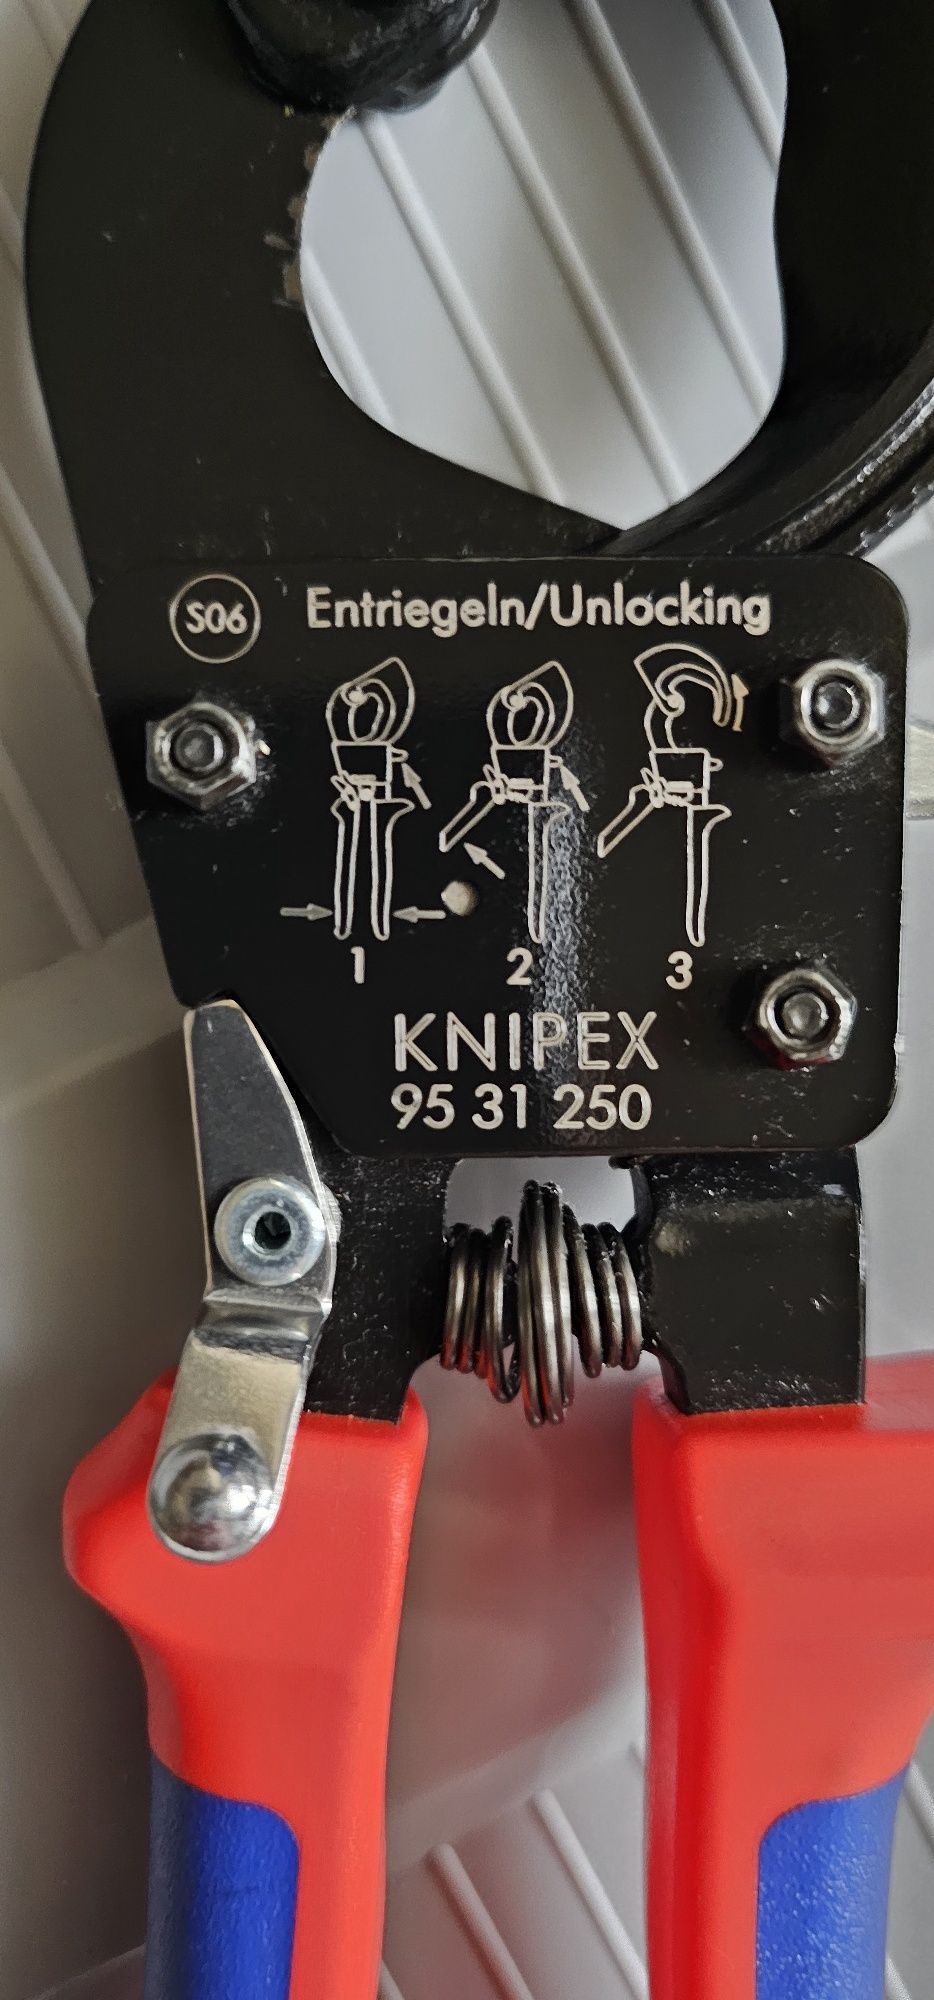 KNIPEX Nożyce do kabli (mechanizm zapadkowy)
Nożyce do kabli